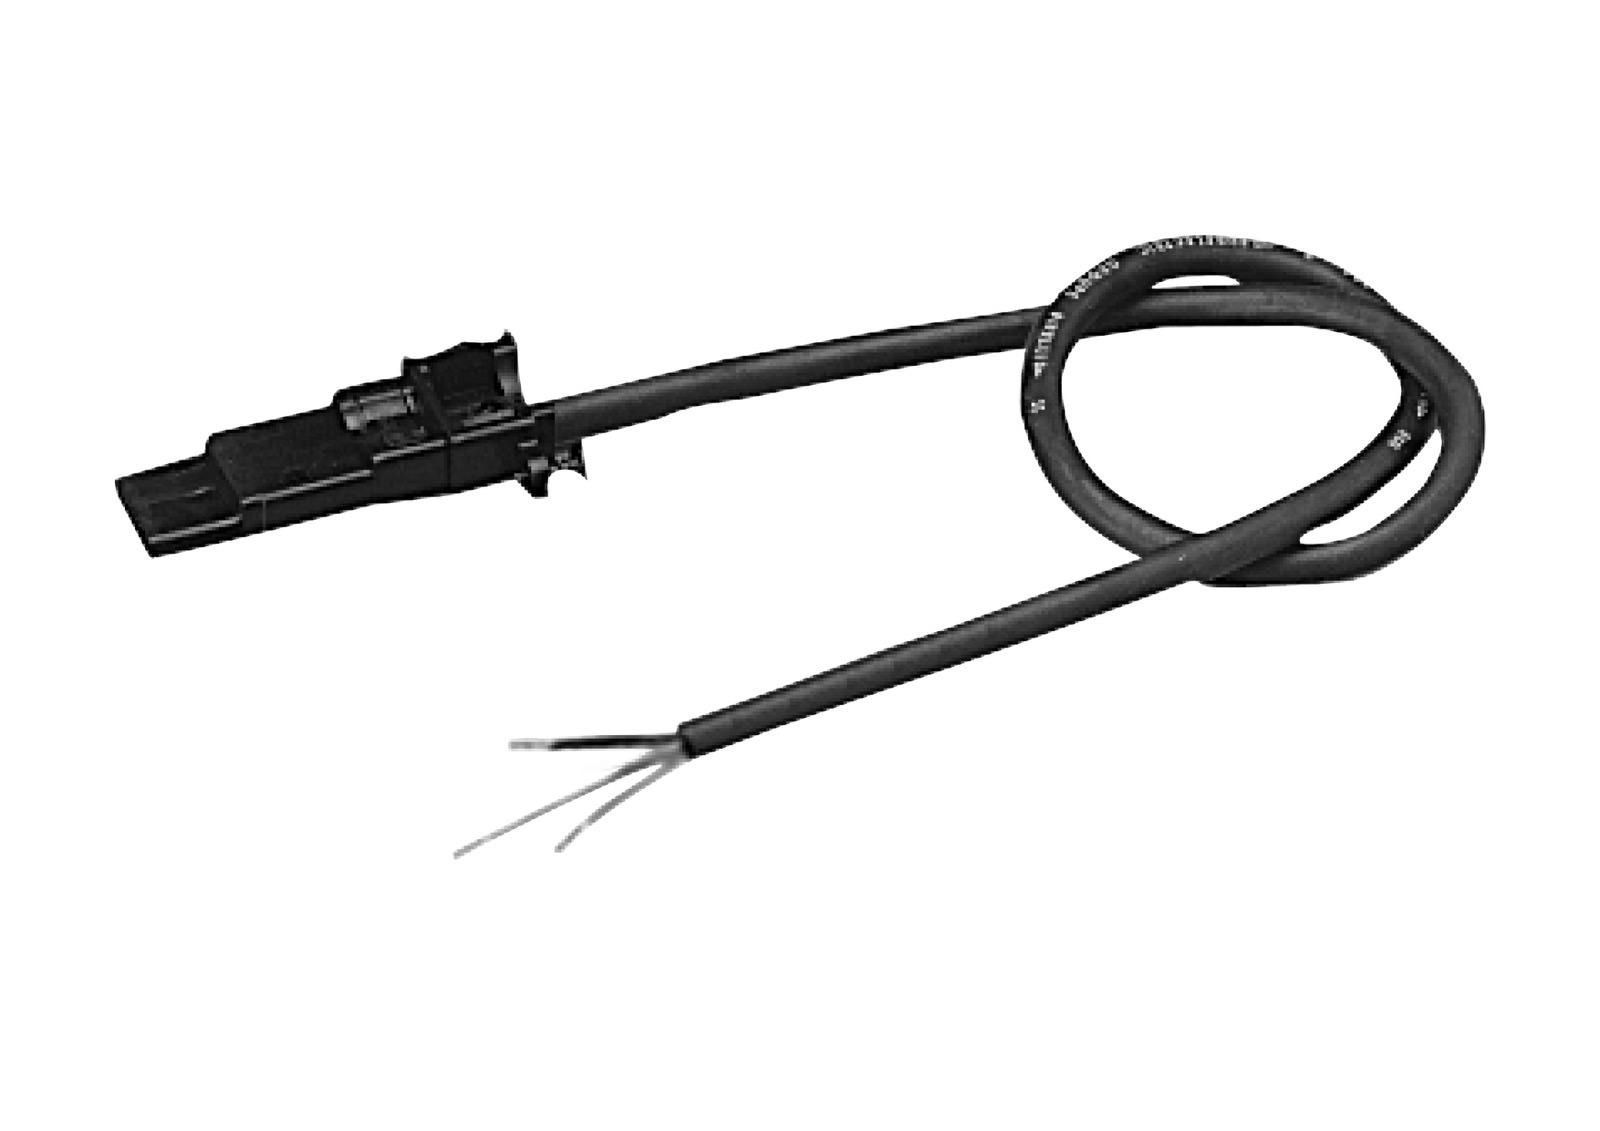 Somfy io / RTS Anschlusskabel (3-adrig) mit HiPro-Antriebsstecker, 1 m schwarz